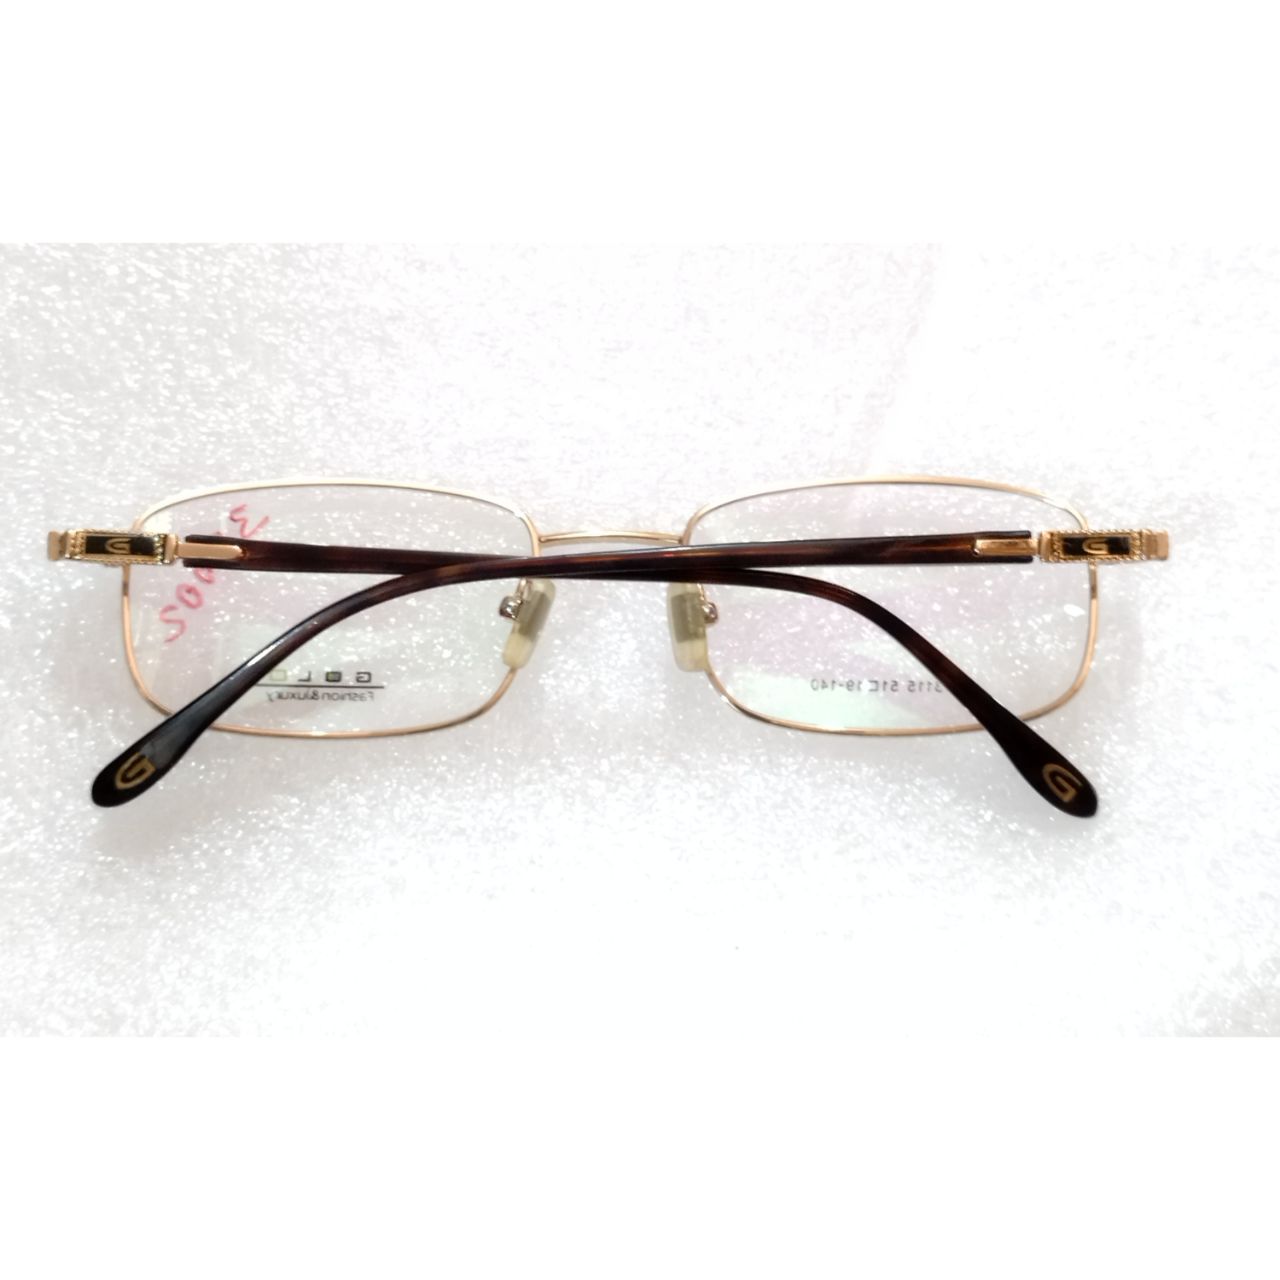 Gold Full Frame Progressive Multifocal No-Line Bifocal Glasses for Men and Women